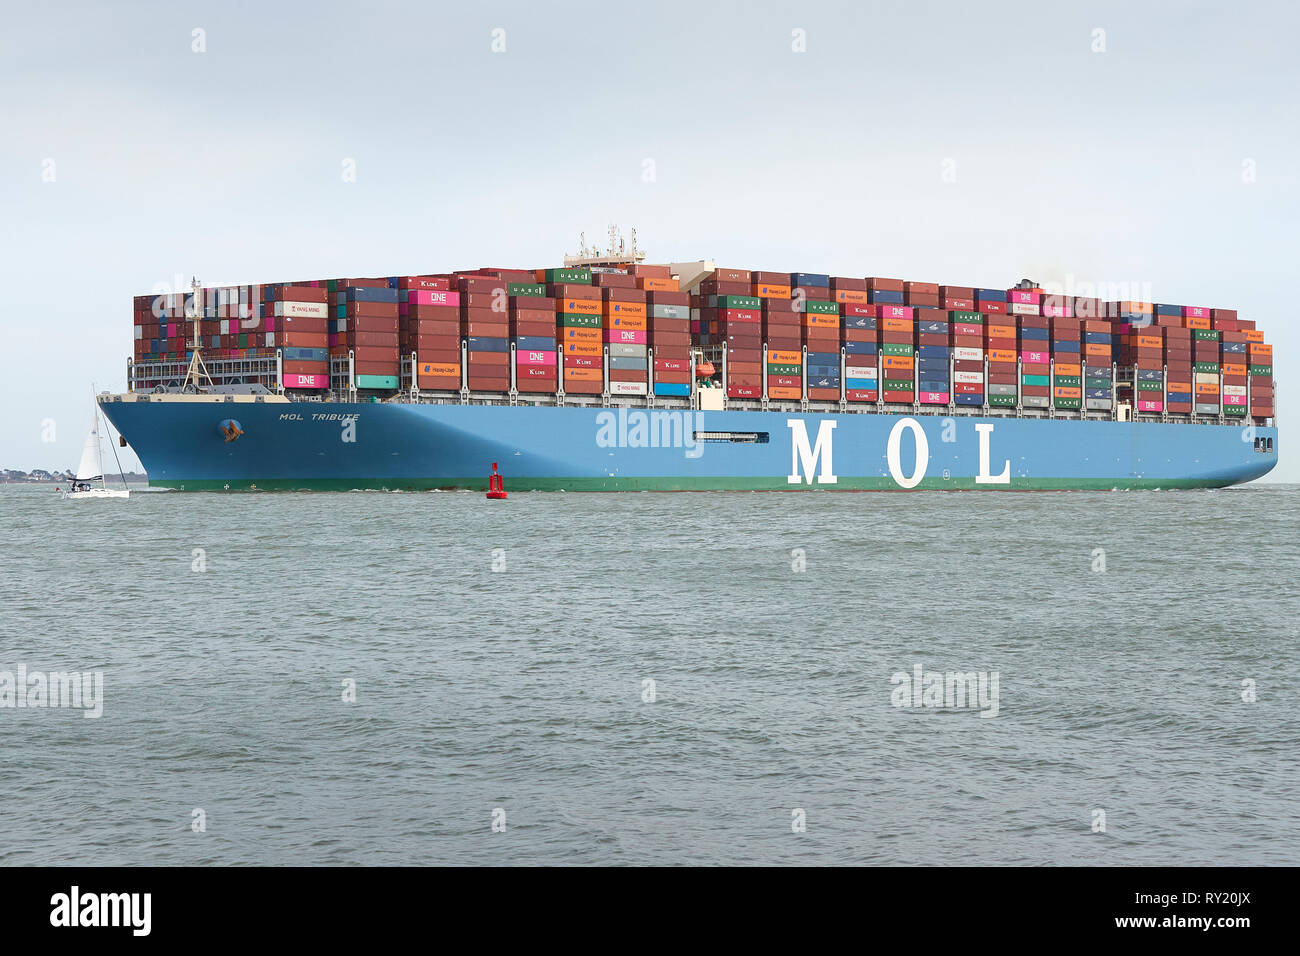 Le porte-conteneurs, MOL HOMMAGE, entre dans l'étroit chenal profond dans le Port de Southampton après un voyage de 26 jours à partir de Singapour. Banque D'Images